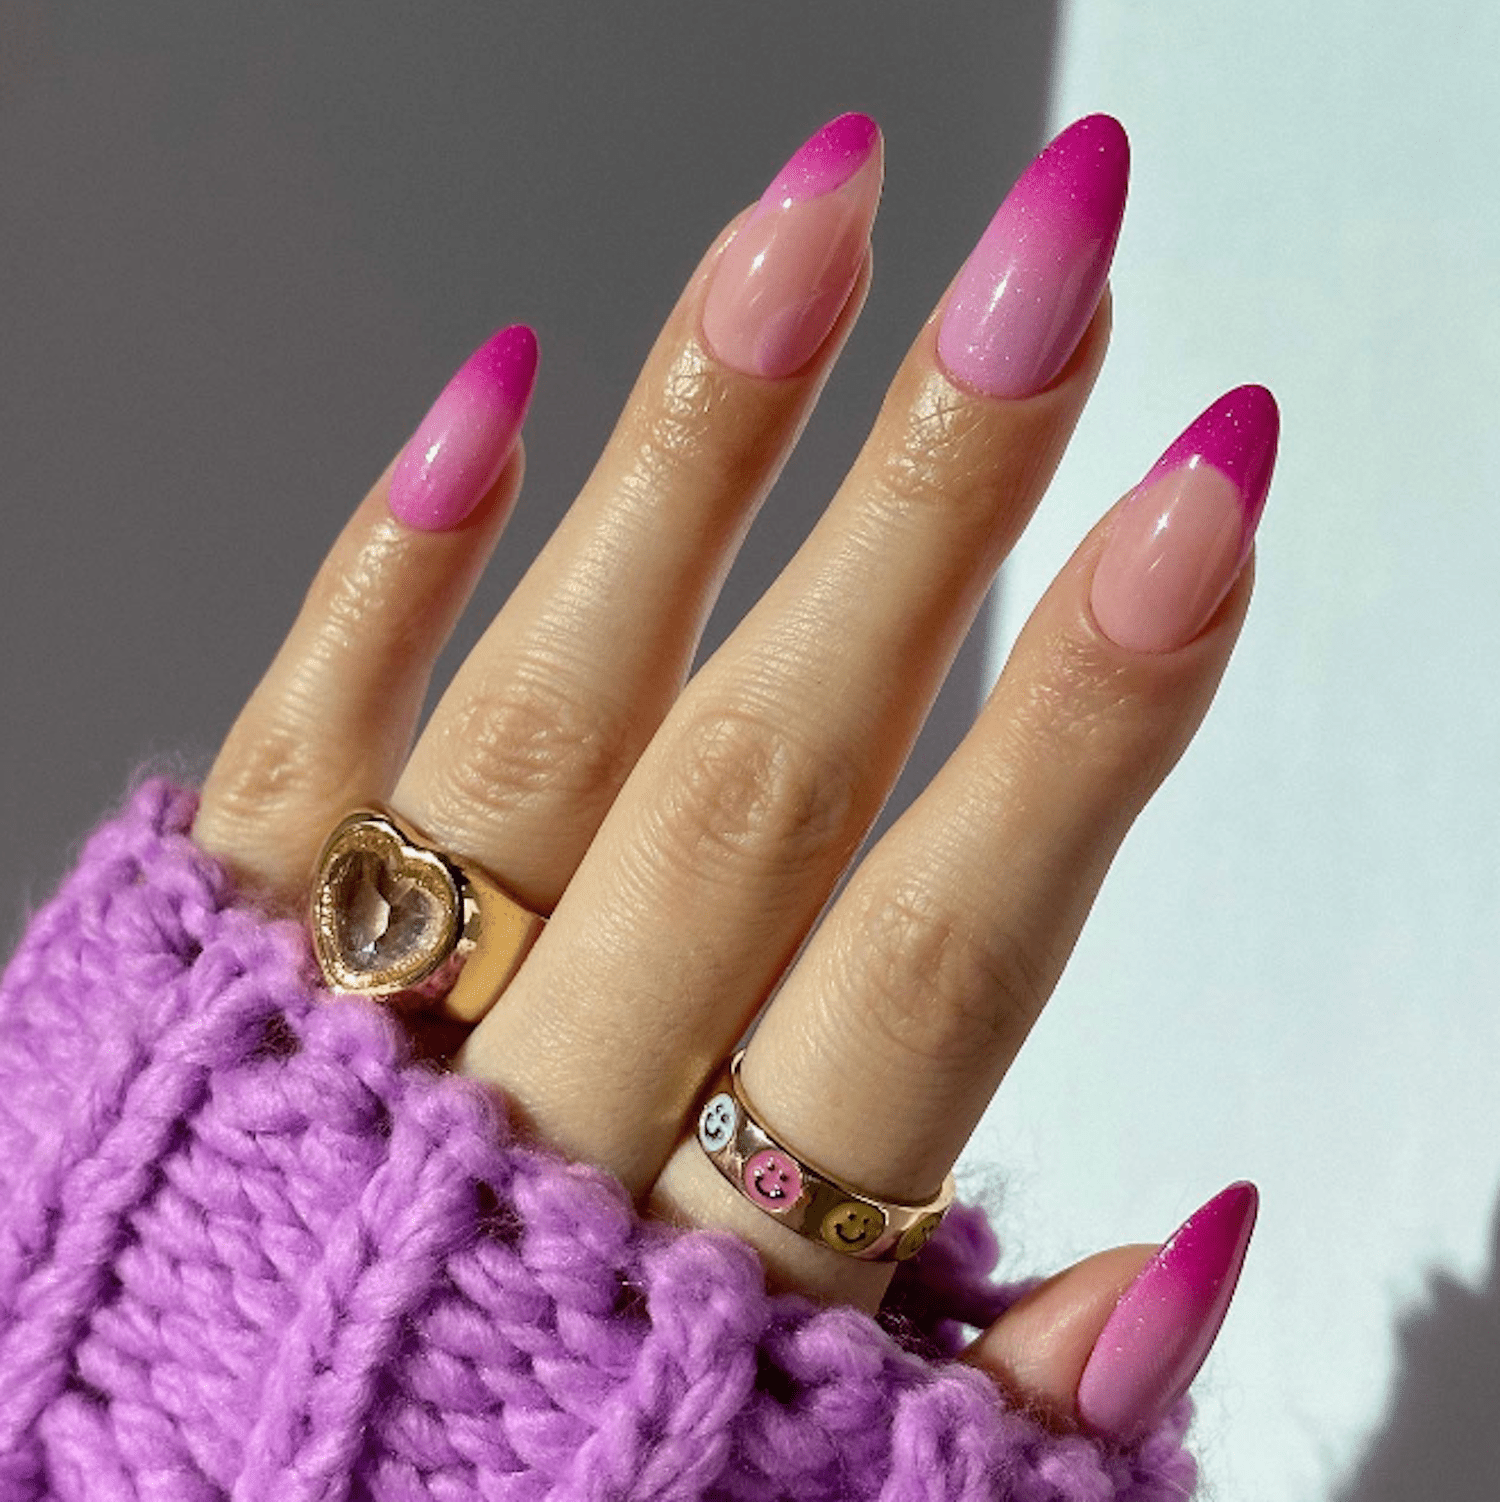 亮粉红色和深粉红色指甲与不同的细节在每个指甲上